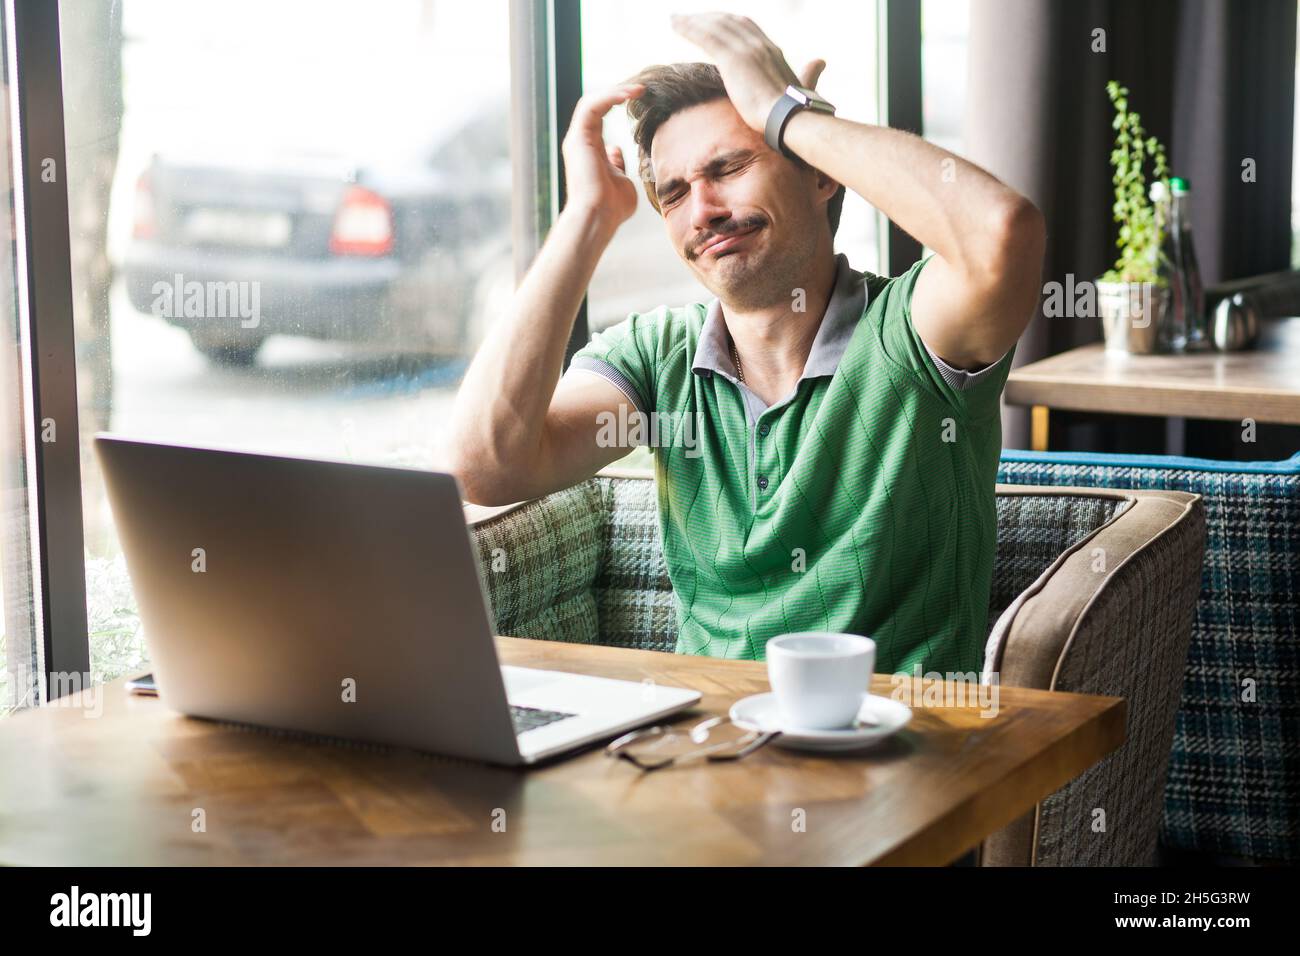 Portrait d'un homme d'affaires désespéré portant un T-shirt vert, se sentant désolé et se blâmant de l'erreur en travaillant en ligne sur un ordinateur portable, prise en intérieur près d'une grande fenêtre, arrière-plan de café. Banque D'Images